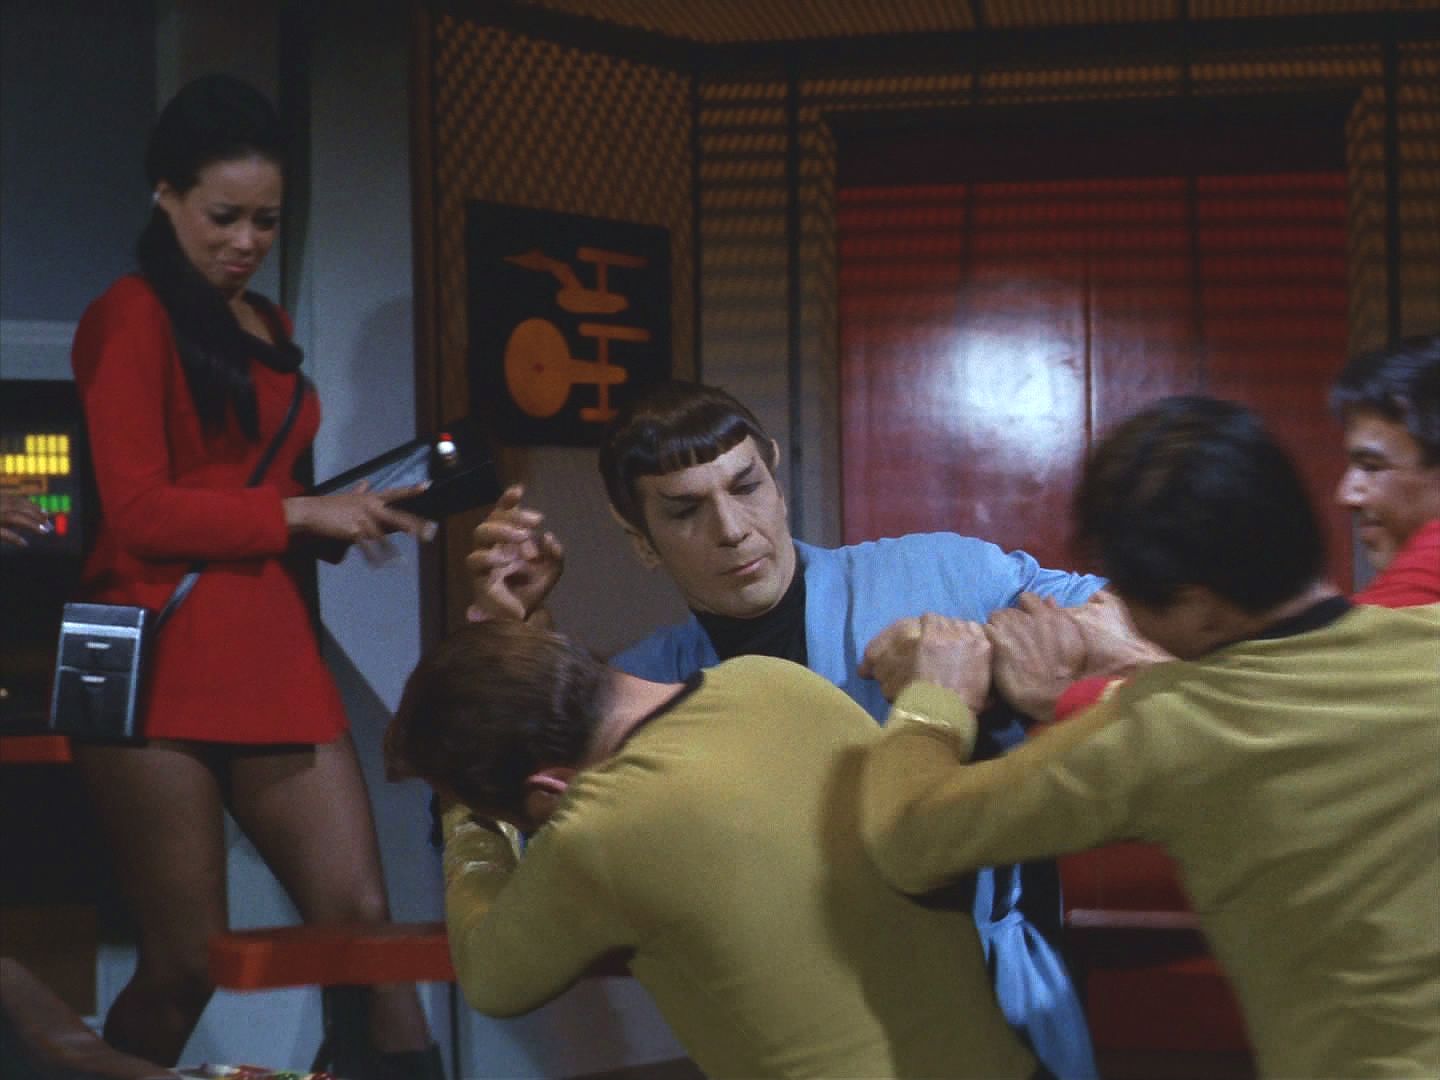 Spock krátce propadl šílenství, stejnému, jehož stopu sledují napříč touto částí galaxie a které zničilo několik civilizací. Pod vlivem parazita se chtěl zmocnit lodi, aby se nákaza šířila dál.